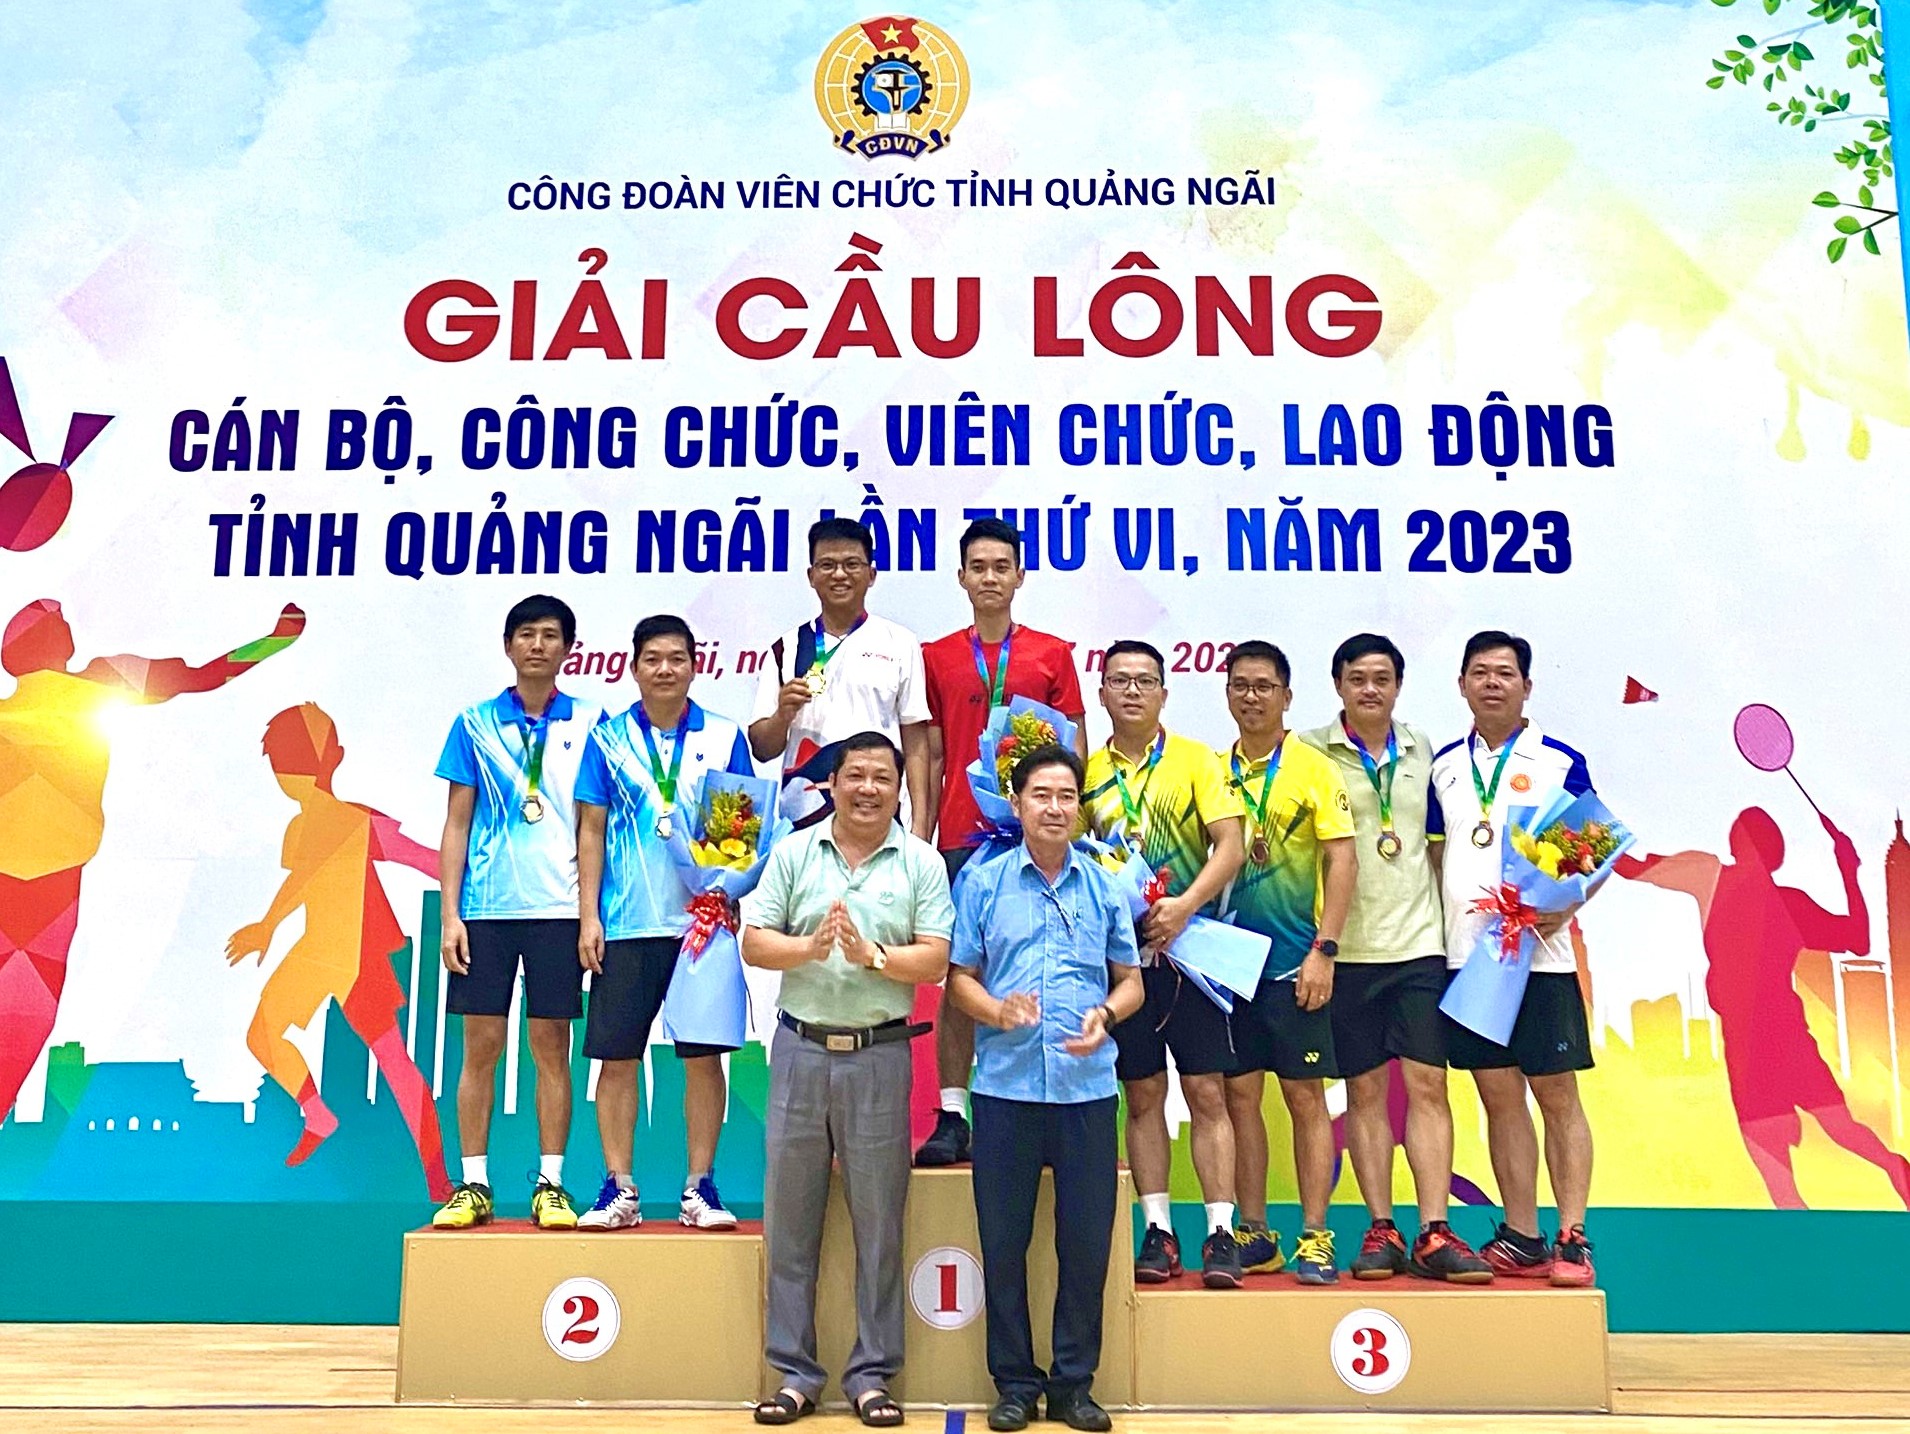 Sở Tài chính tham gia giải Cầu lông Công đoàn Viên chức tỉnh Quảng Ngãi lần thứ VI - năm 2023